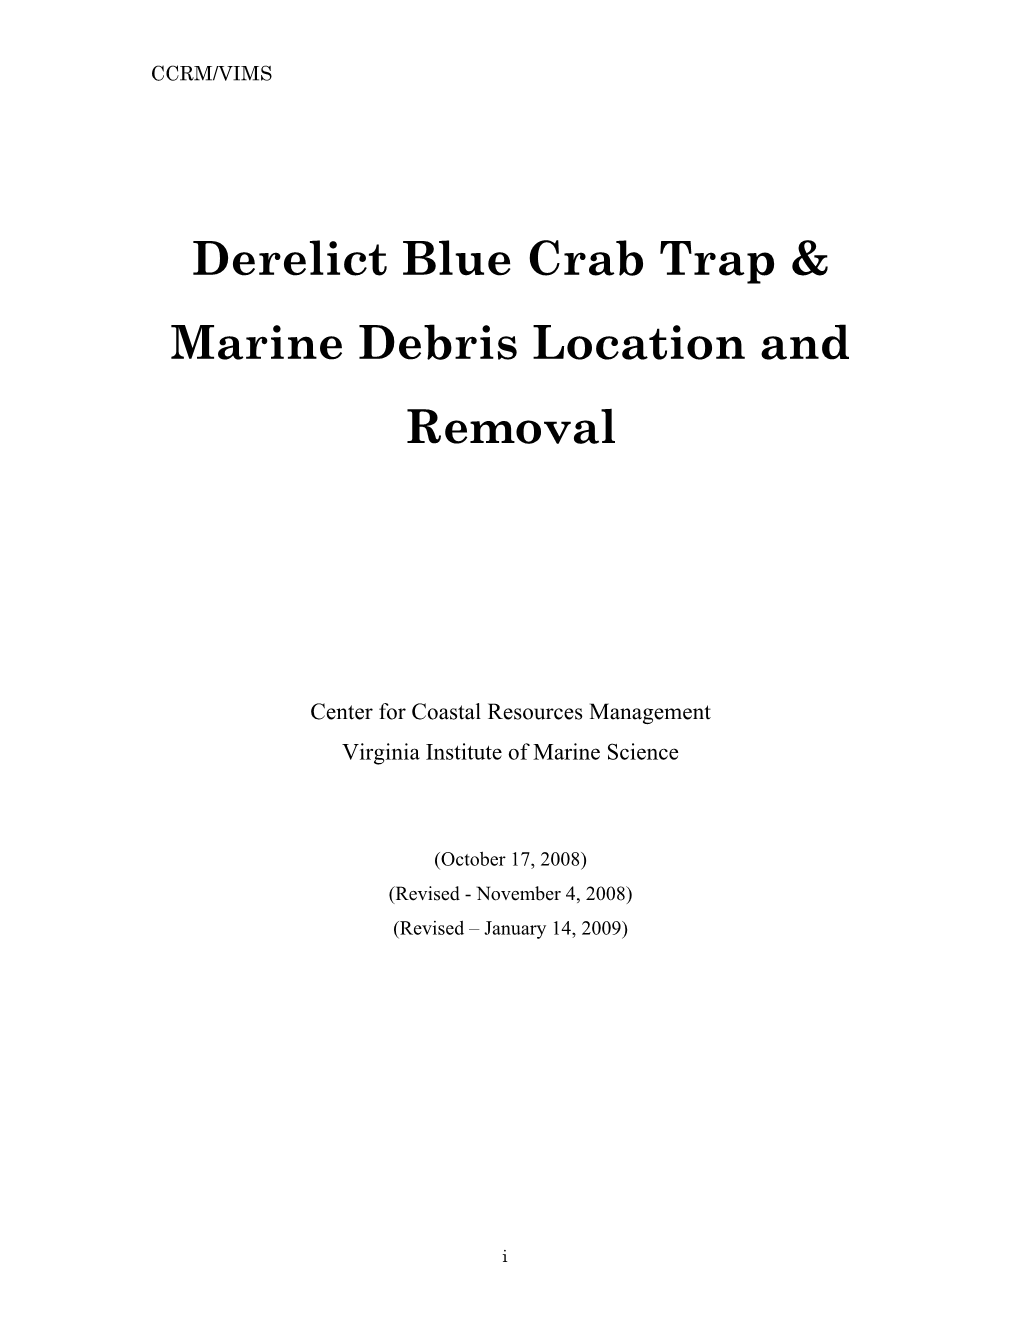 Derelict Blue Crab Trap & Marine Debris Location and Removal